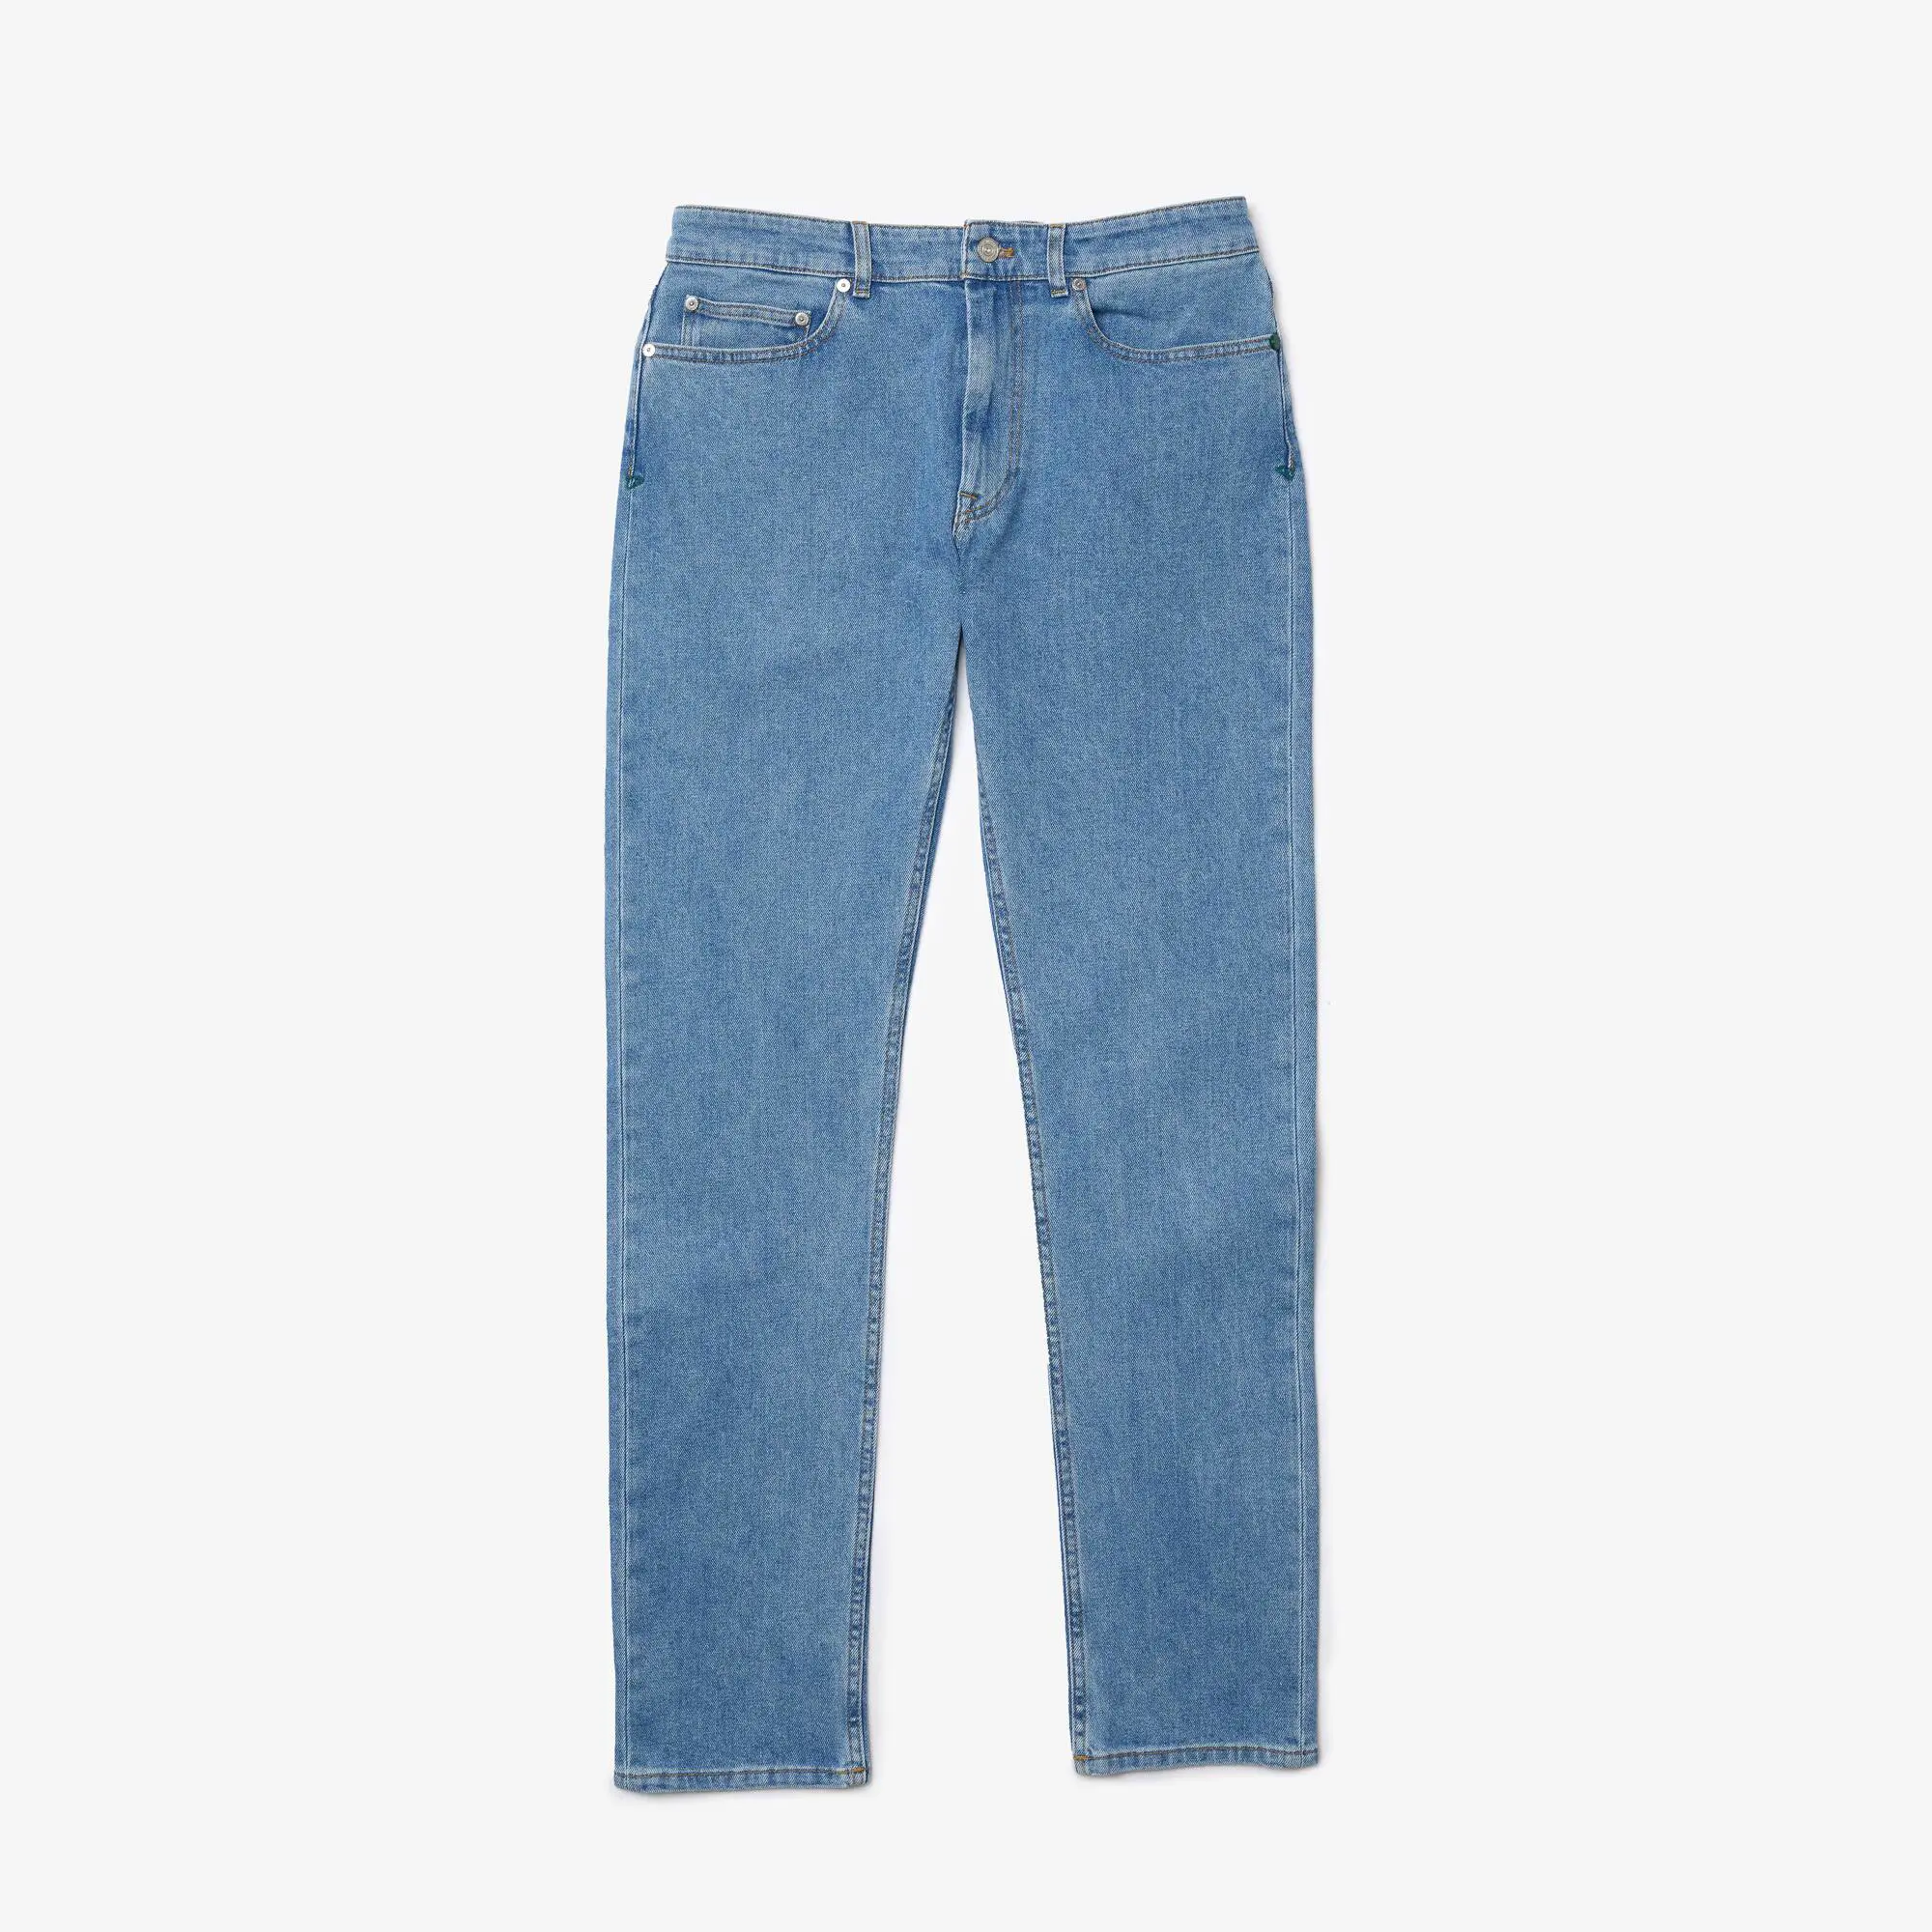 Lacoste Jeans de algodão stretch slim fit para homem. 2